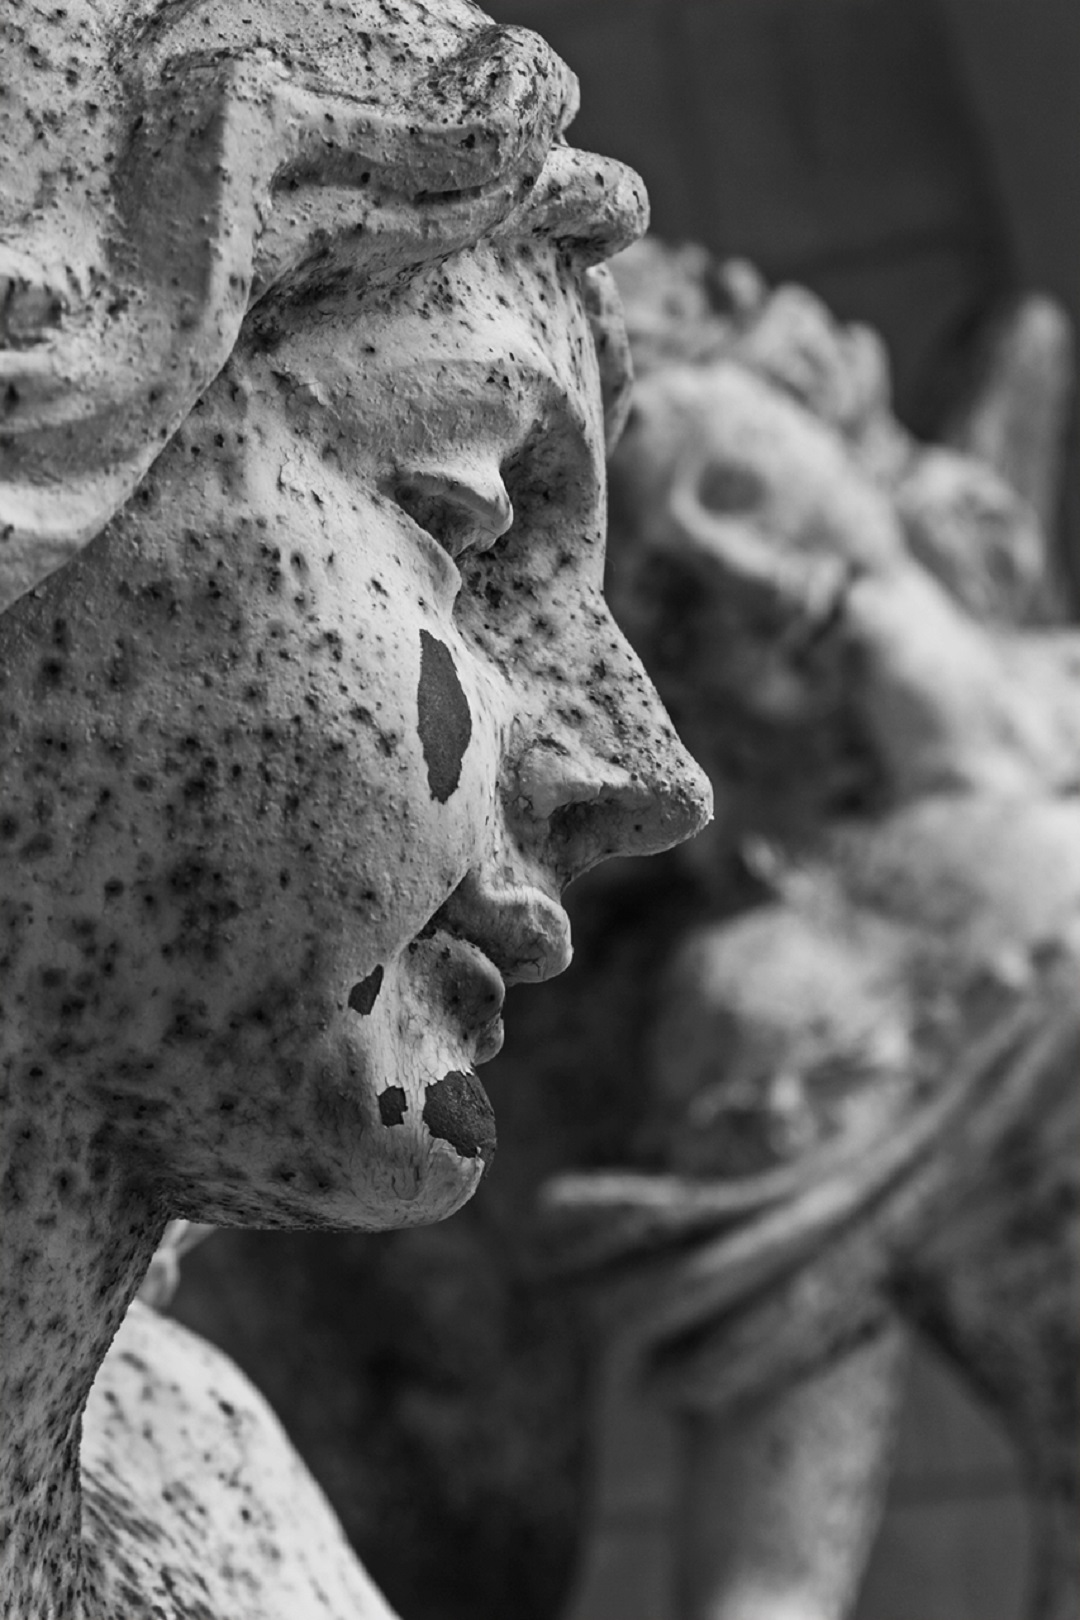 Photo noir et blanc. Le visage d'une statue féminine apparait en gros plan ; une tache sur sa joue laisse à penser qu'elle pleure.